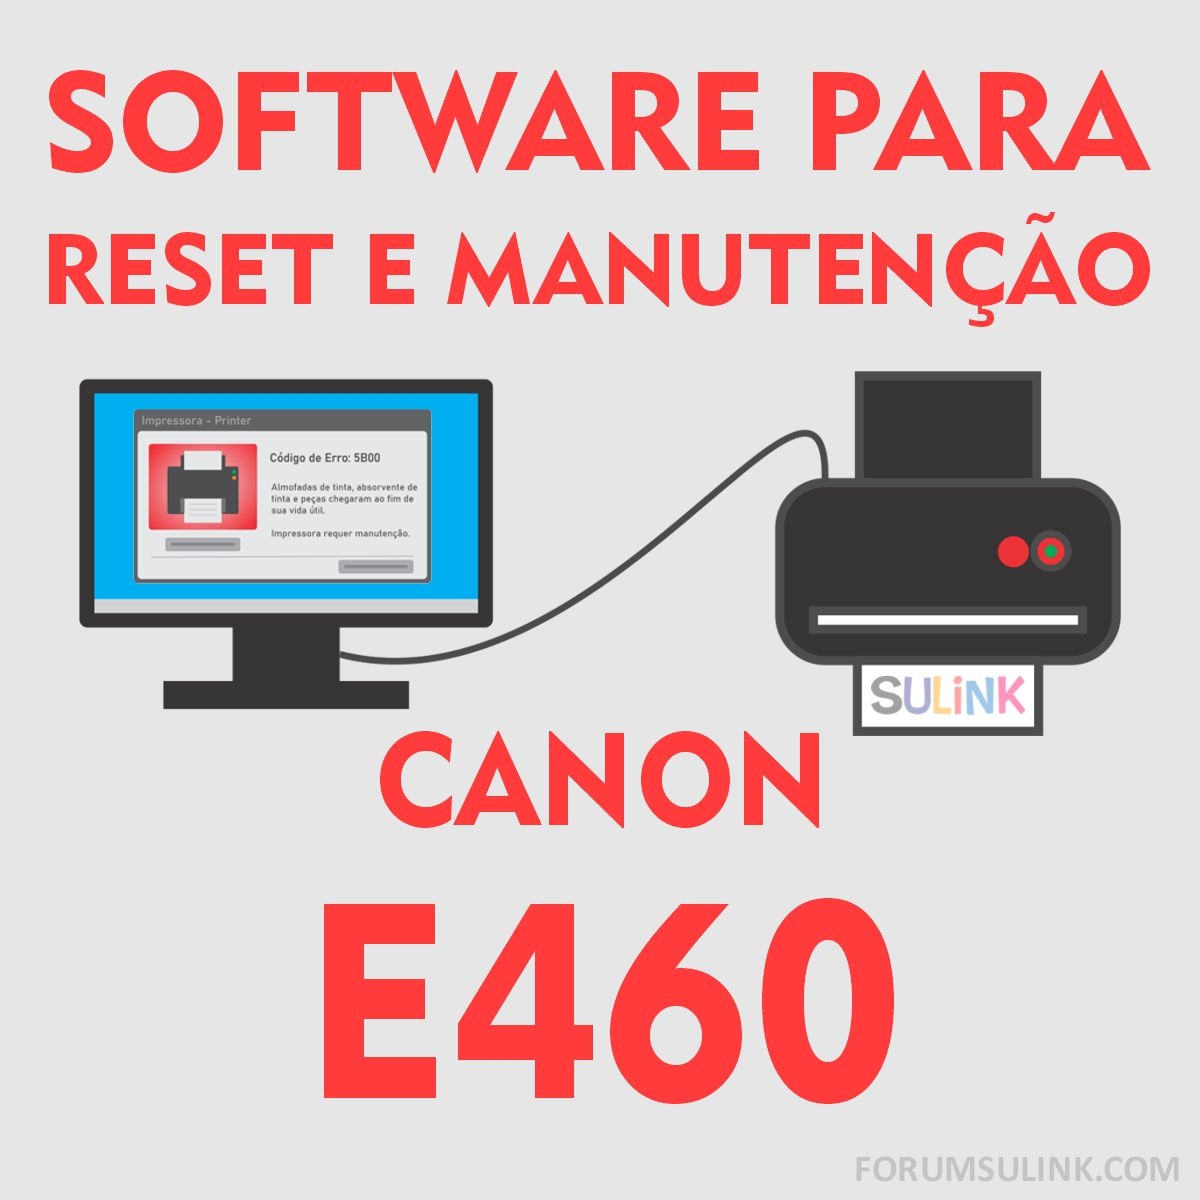 Canon E460 | Software para Reset das Almofadas e Manutenção